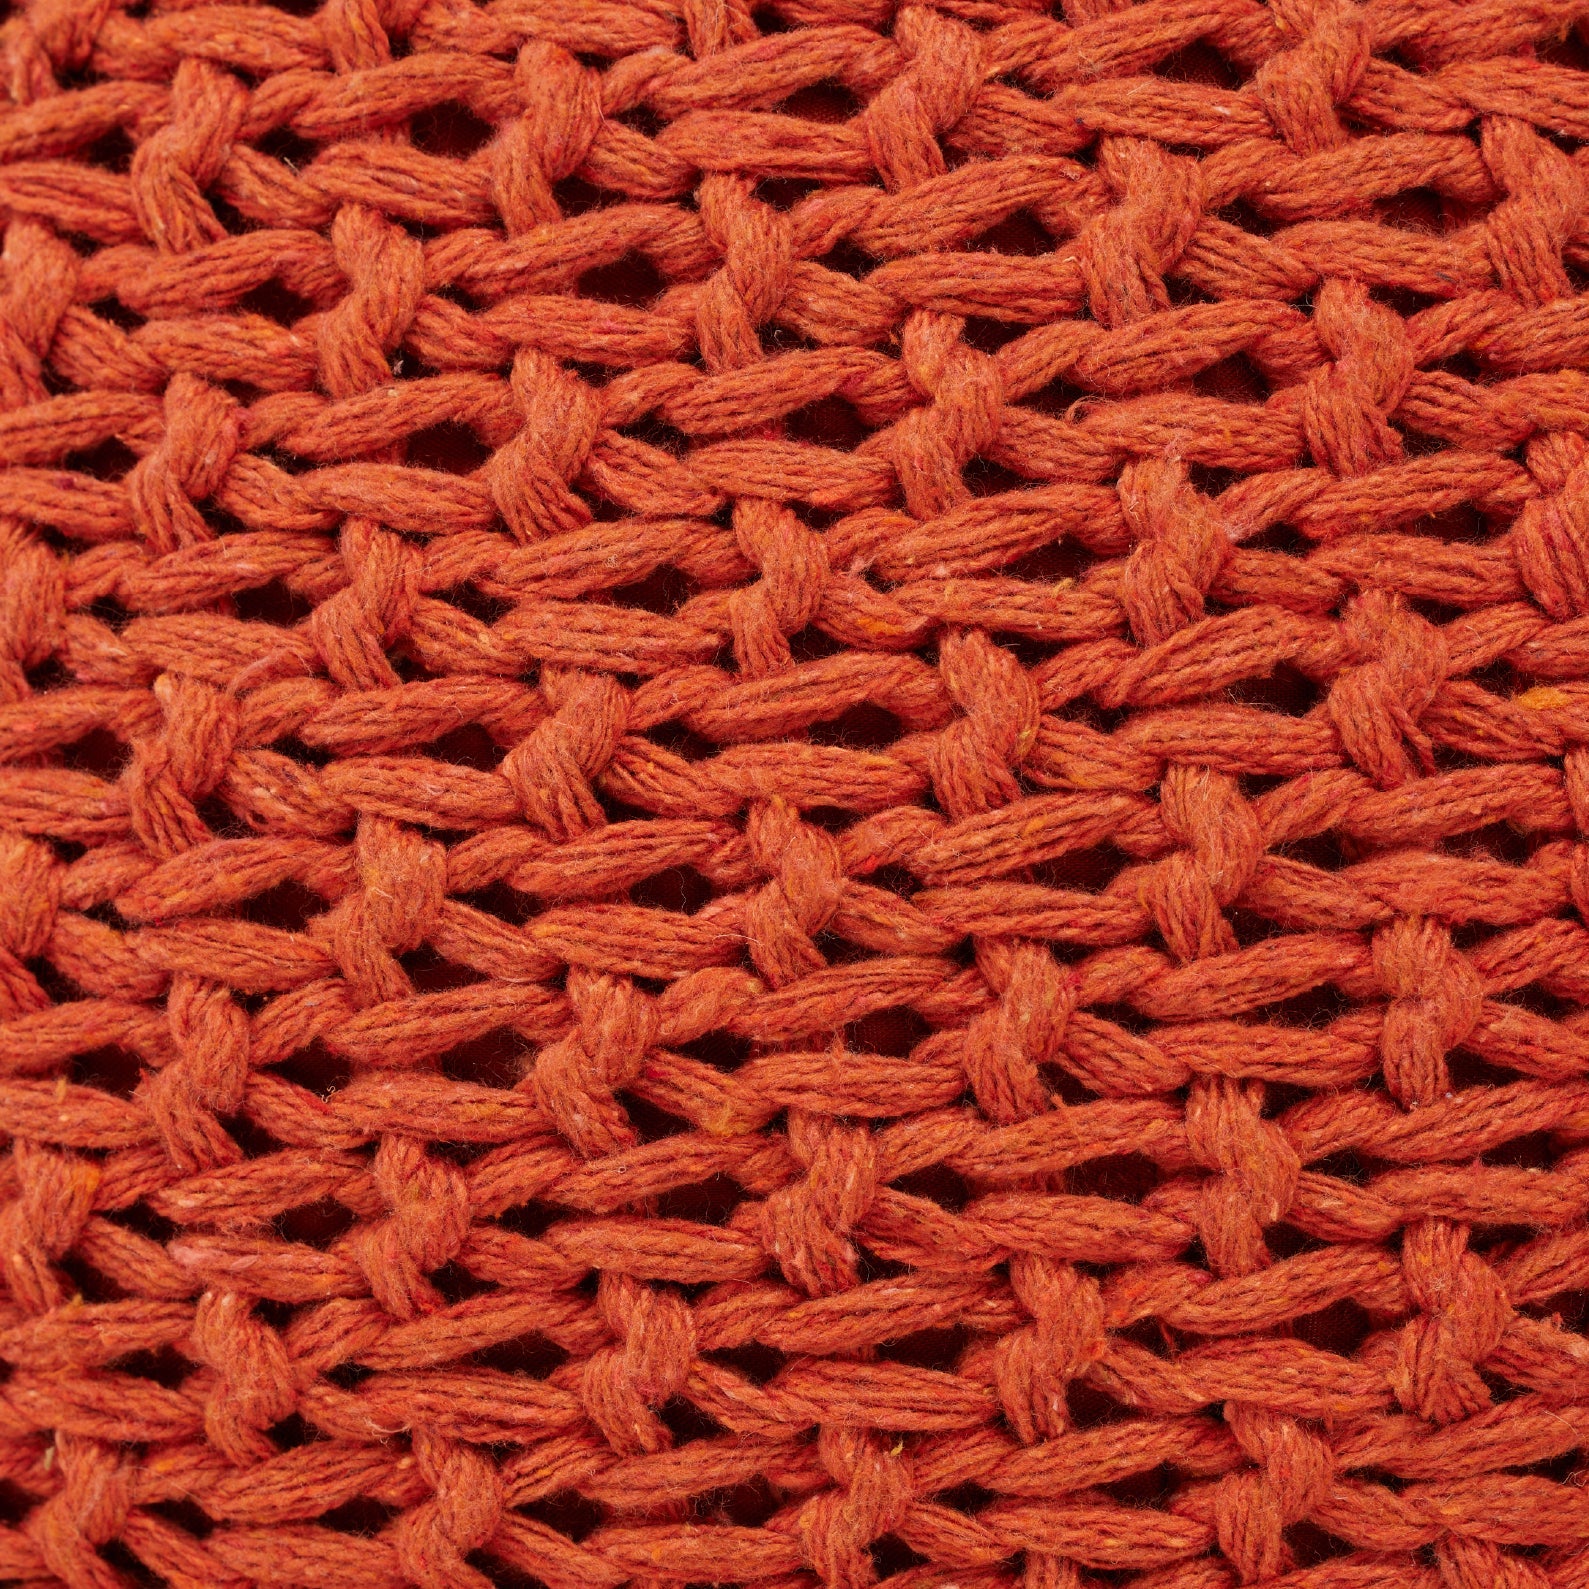 Orange Hand-Knitted Pouf | เก้าอี้สตูล ทอมือ